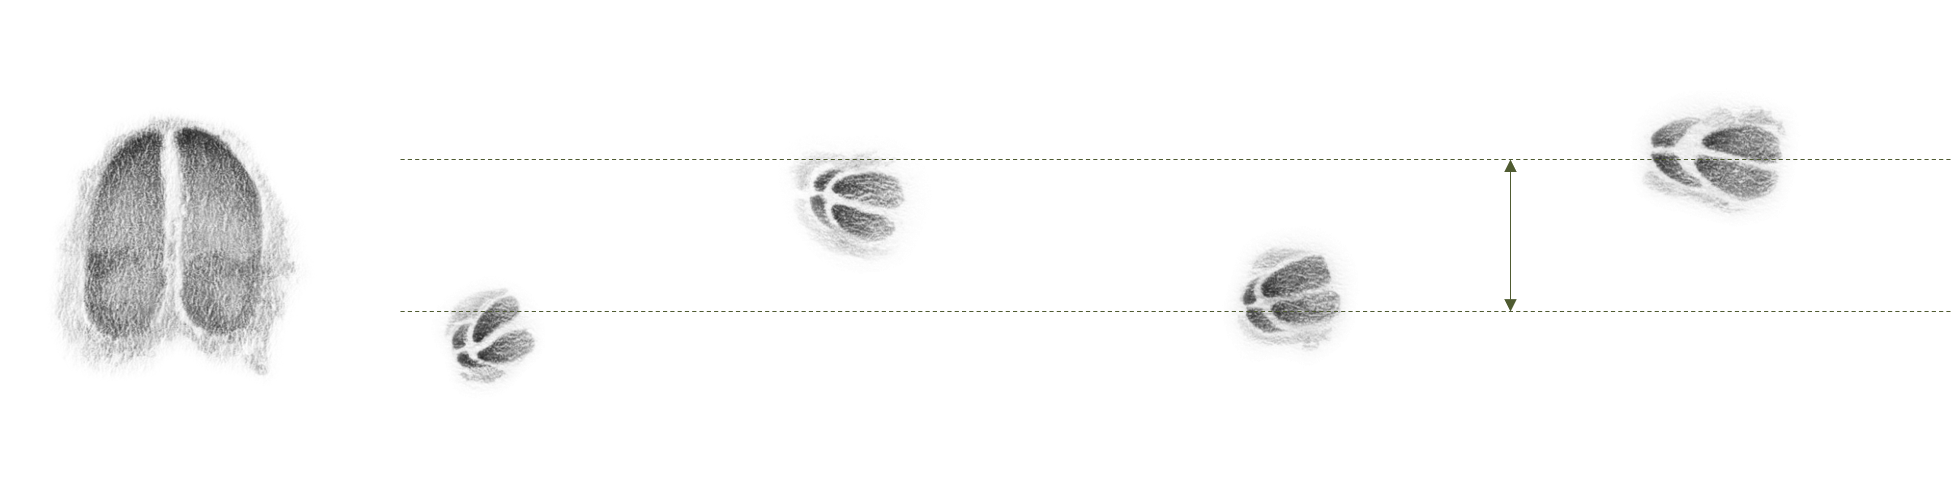 Abbildung: Der Abstand zwischen den linken und rechten Trittsiegeln wird als Schrank bezeichnet.